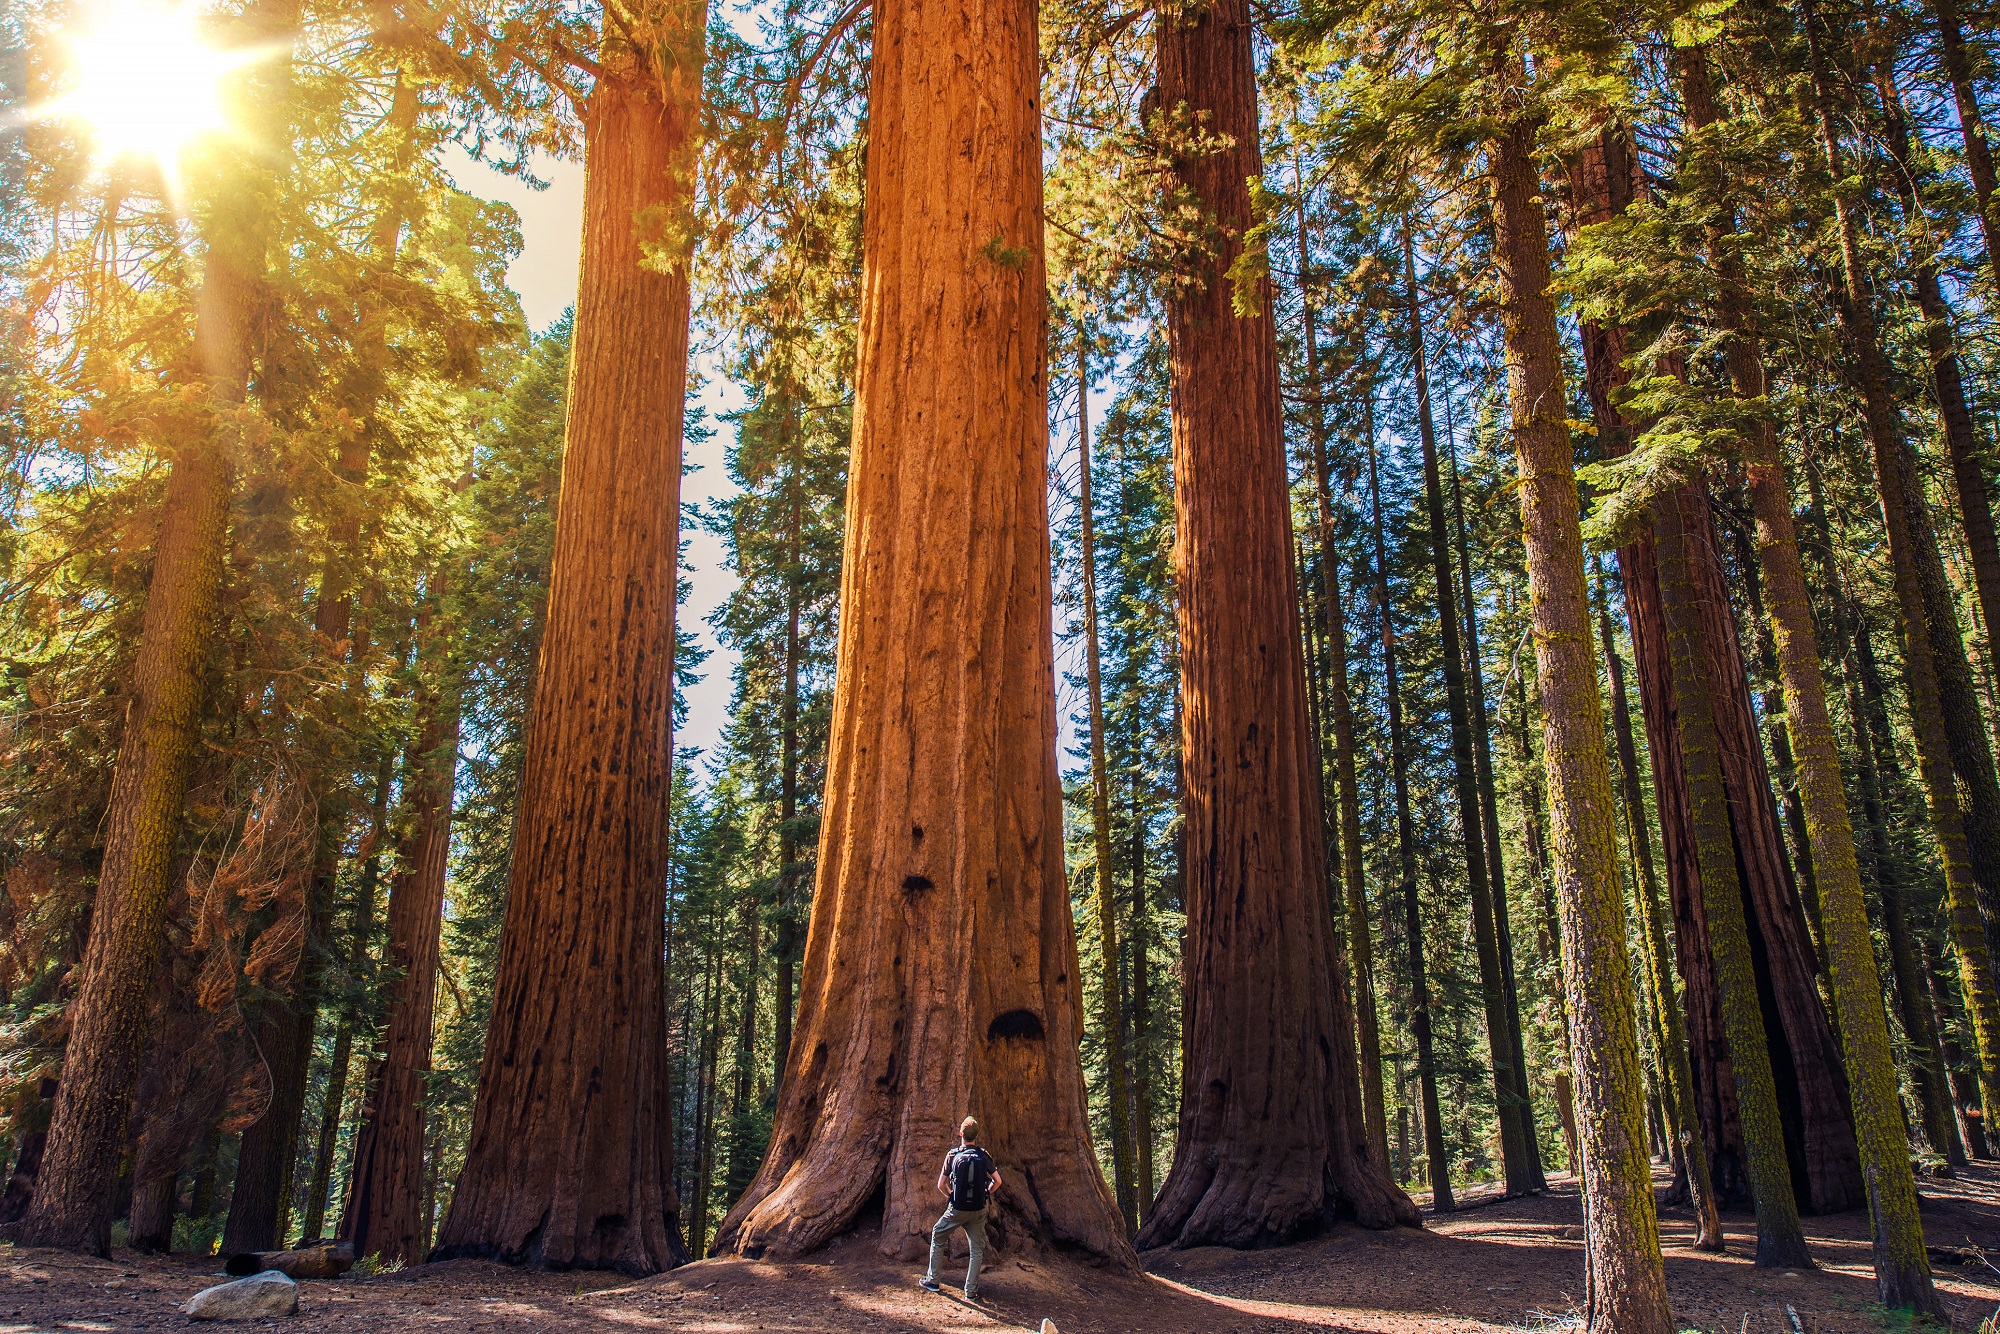 Em uma floresta, um homem está parado, de pé, em frente a uma árvore de grandes proporções, com cerca de oito vezes o seu tamanho. Ao fundo, outras árvores semelhantes.